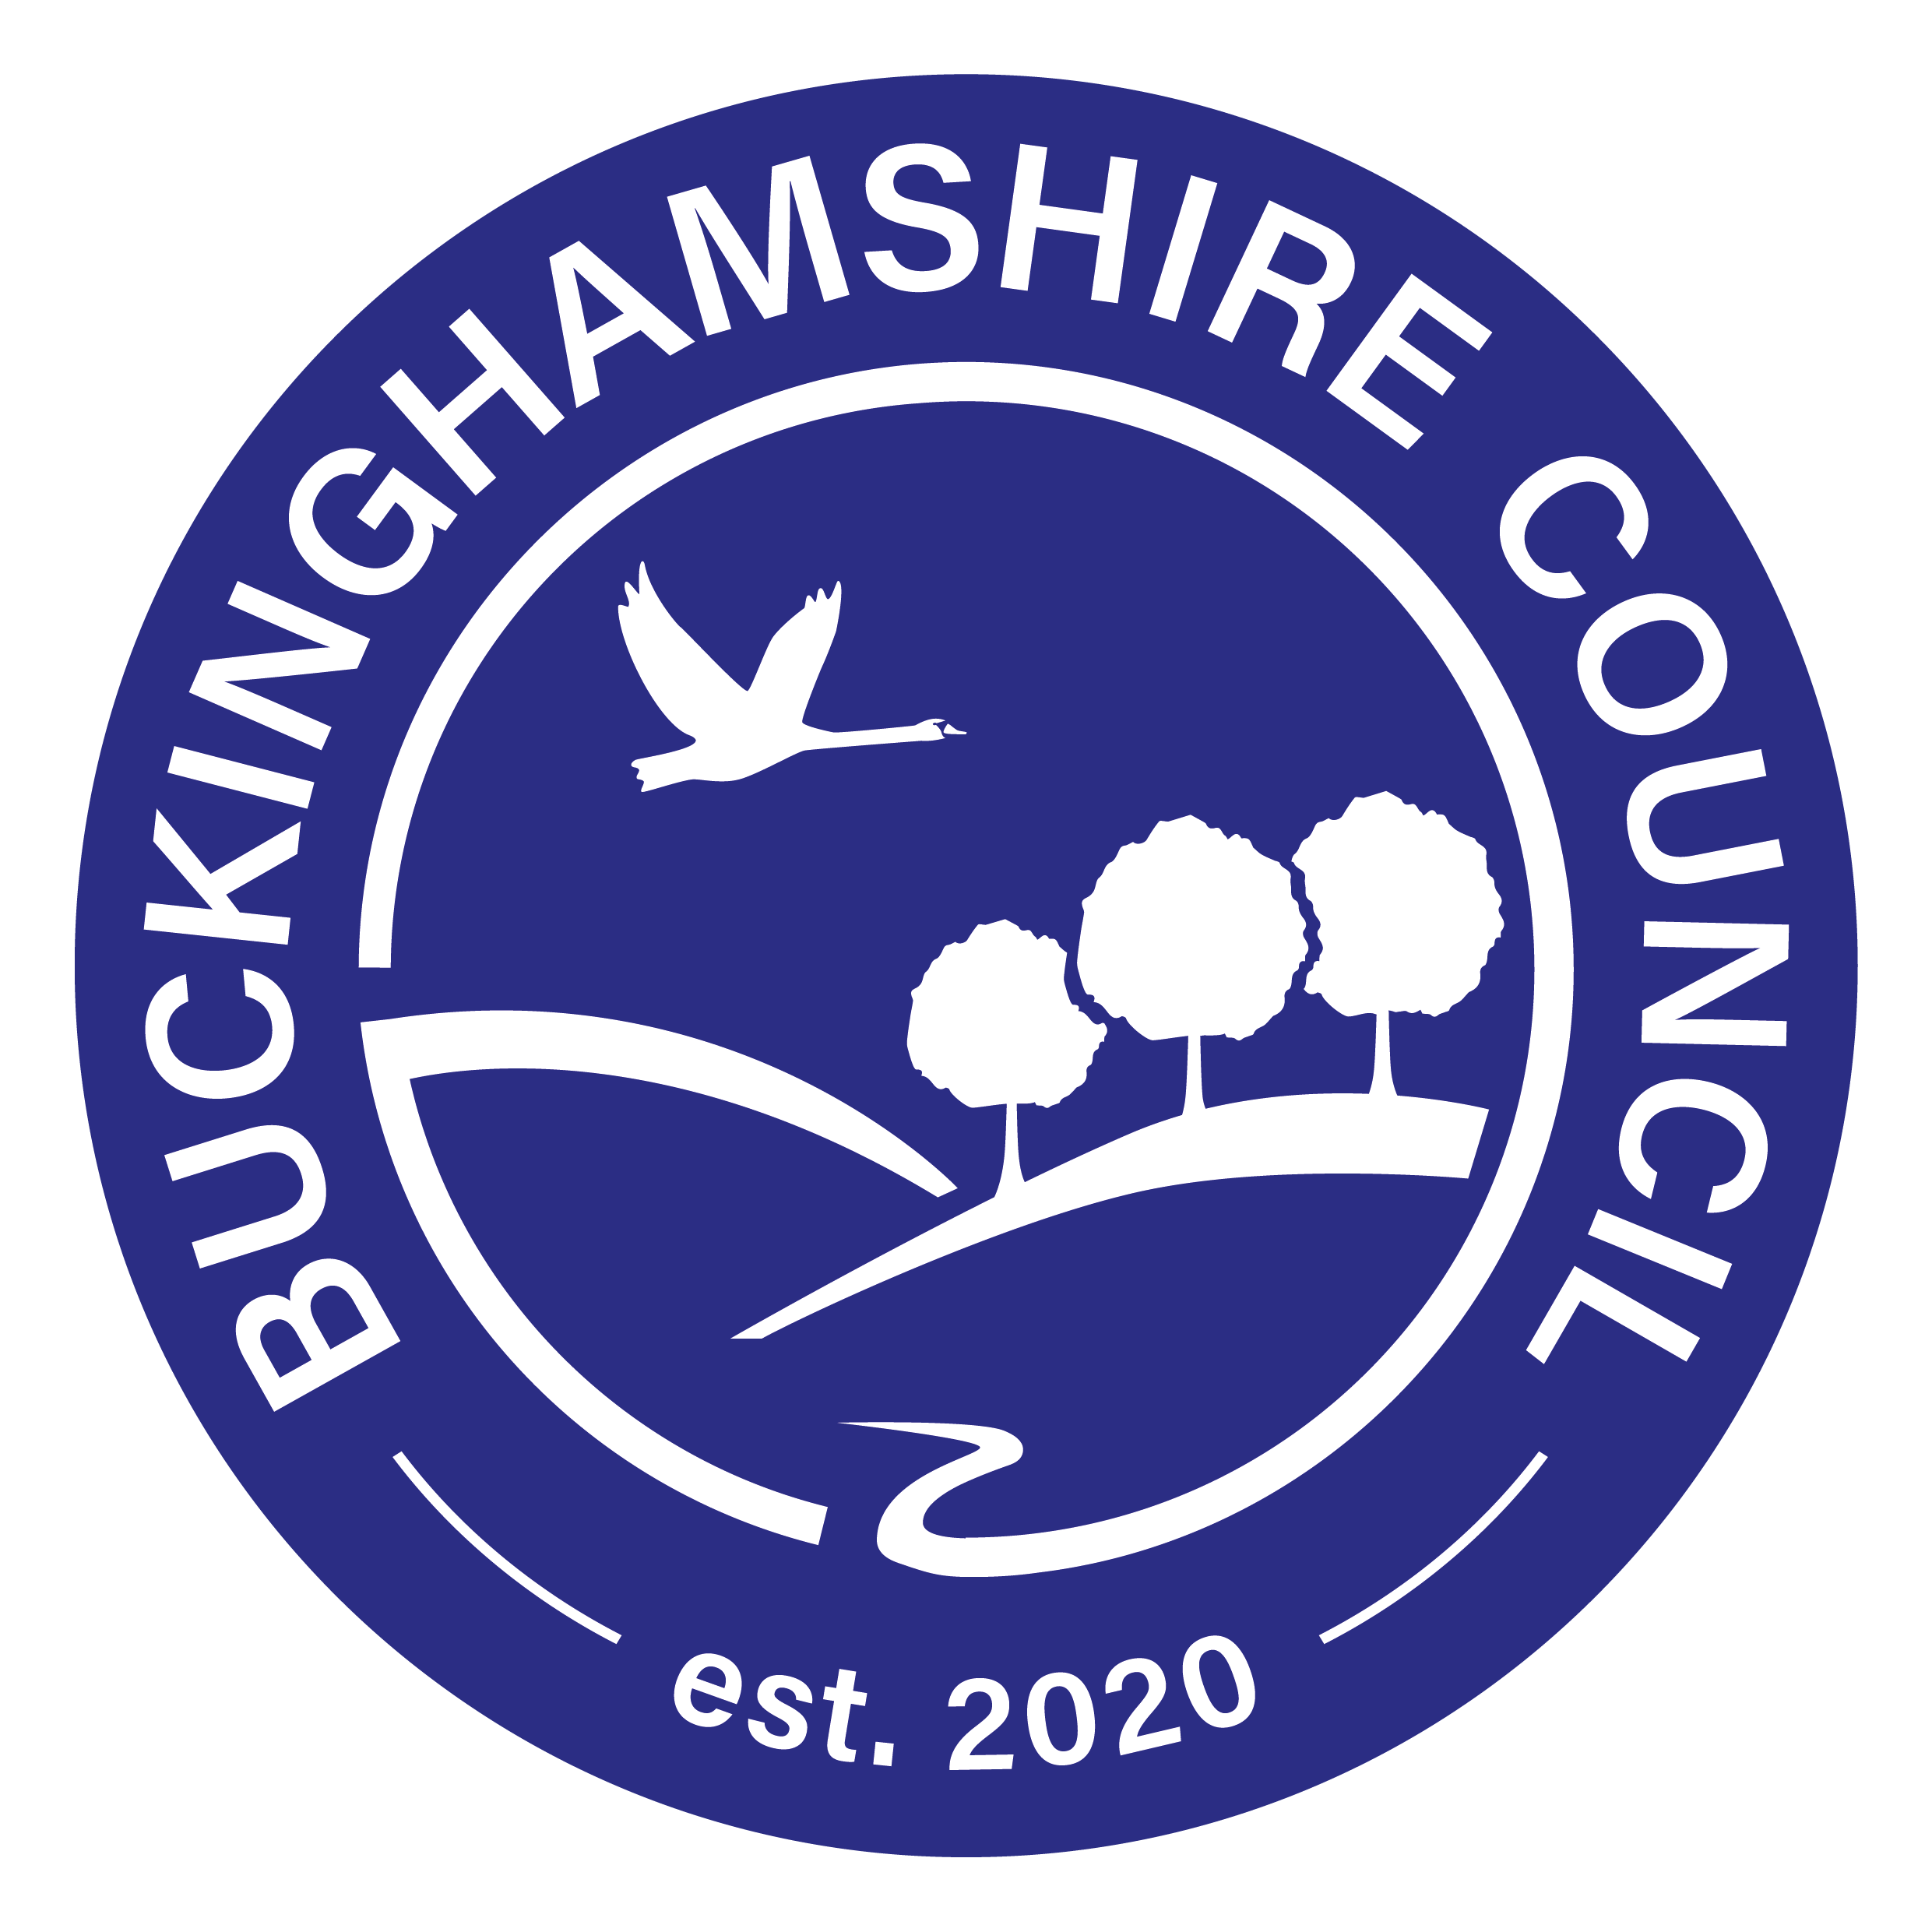 (c) Buckinghamshire.gov.uk